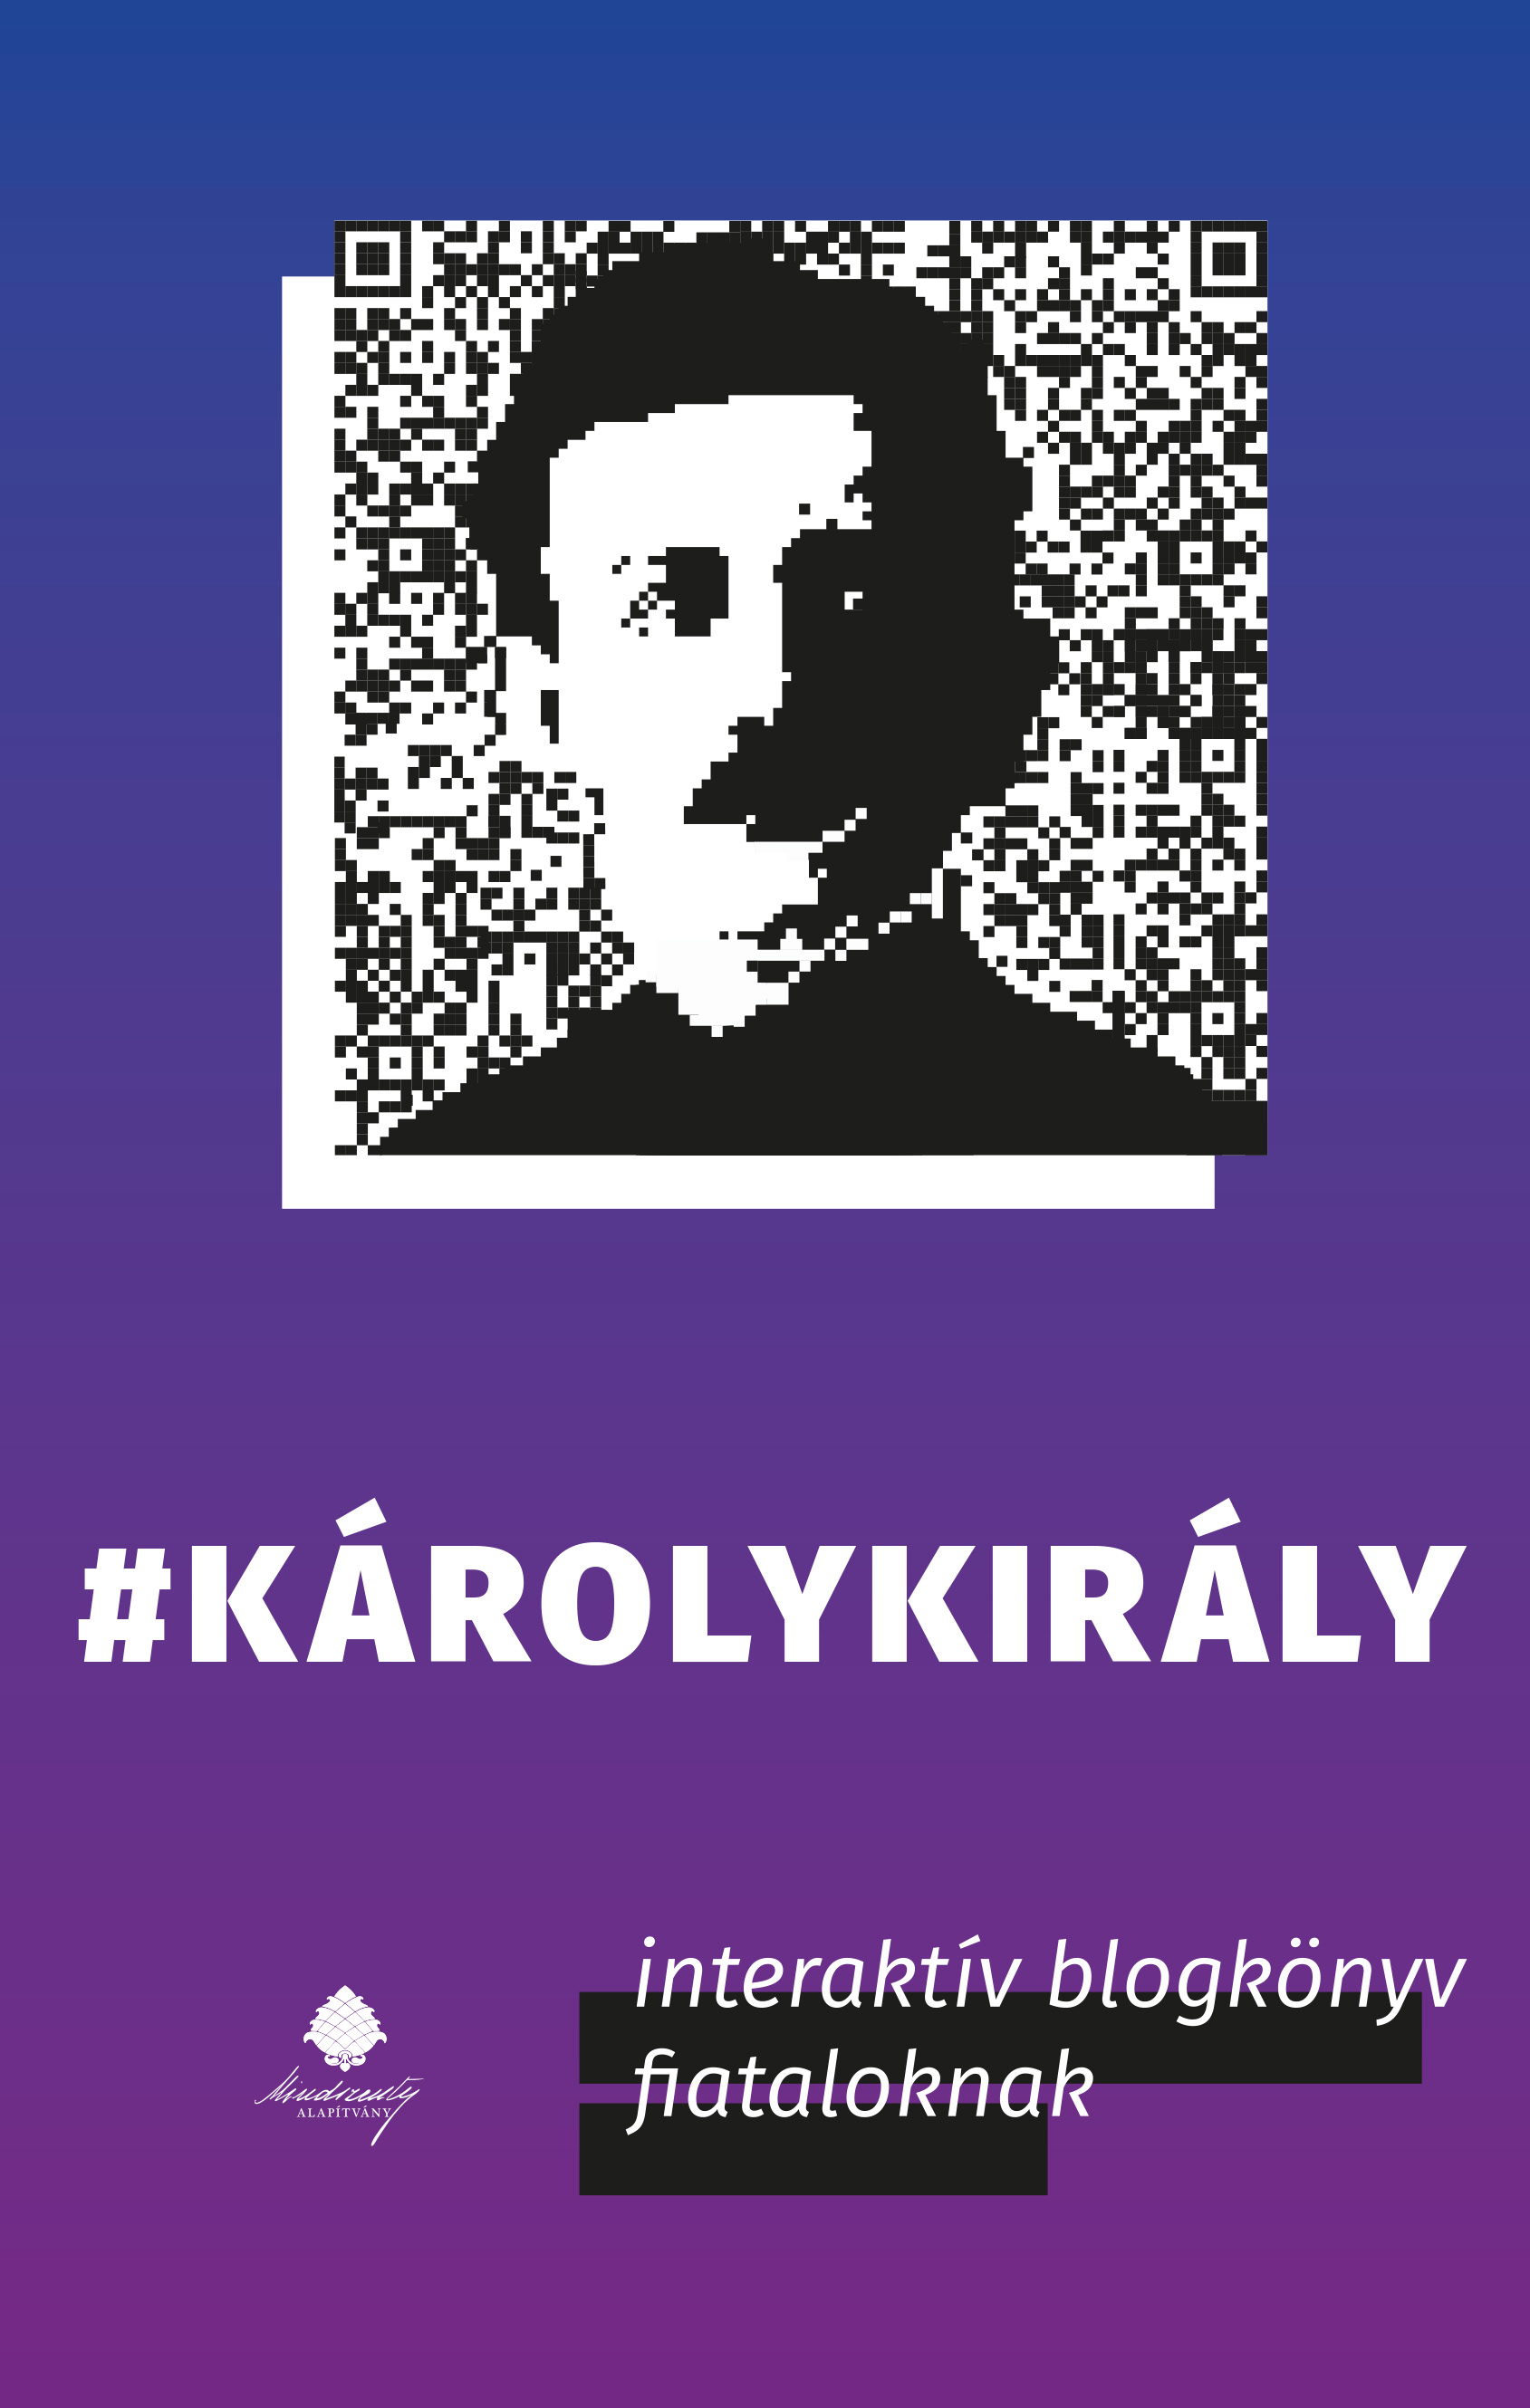 Kovács Gergely - #Károlykirály